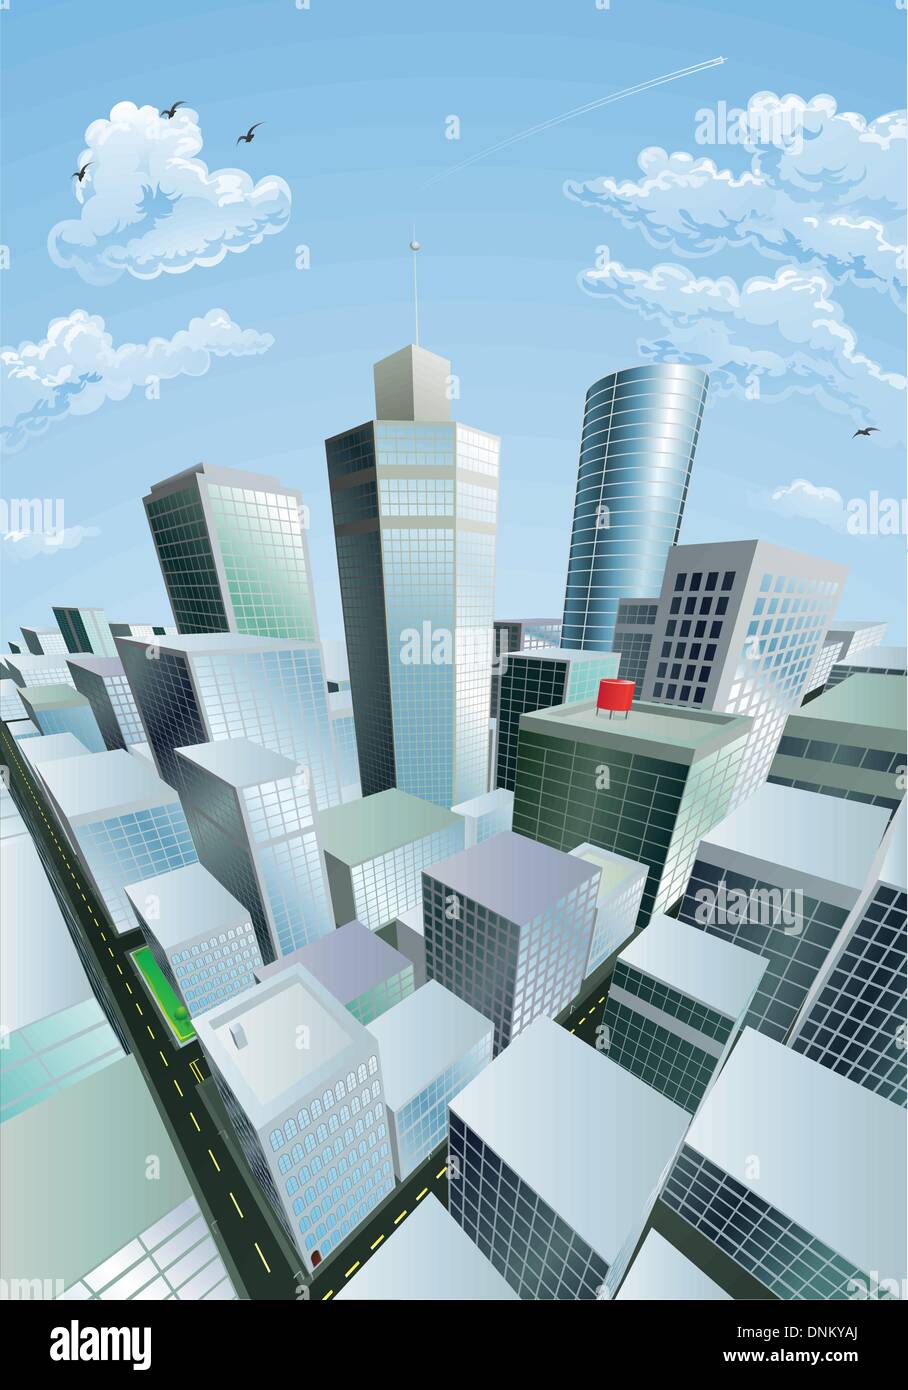 Eine moderne Stadtbild der Stadtzentrum Bankenviertel mit Hochhaus Wolkenkratzer Stock Vektor